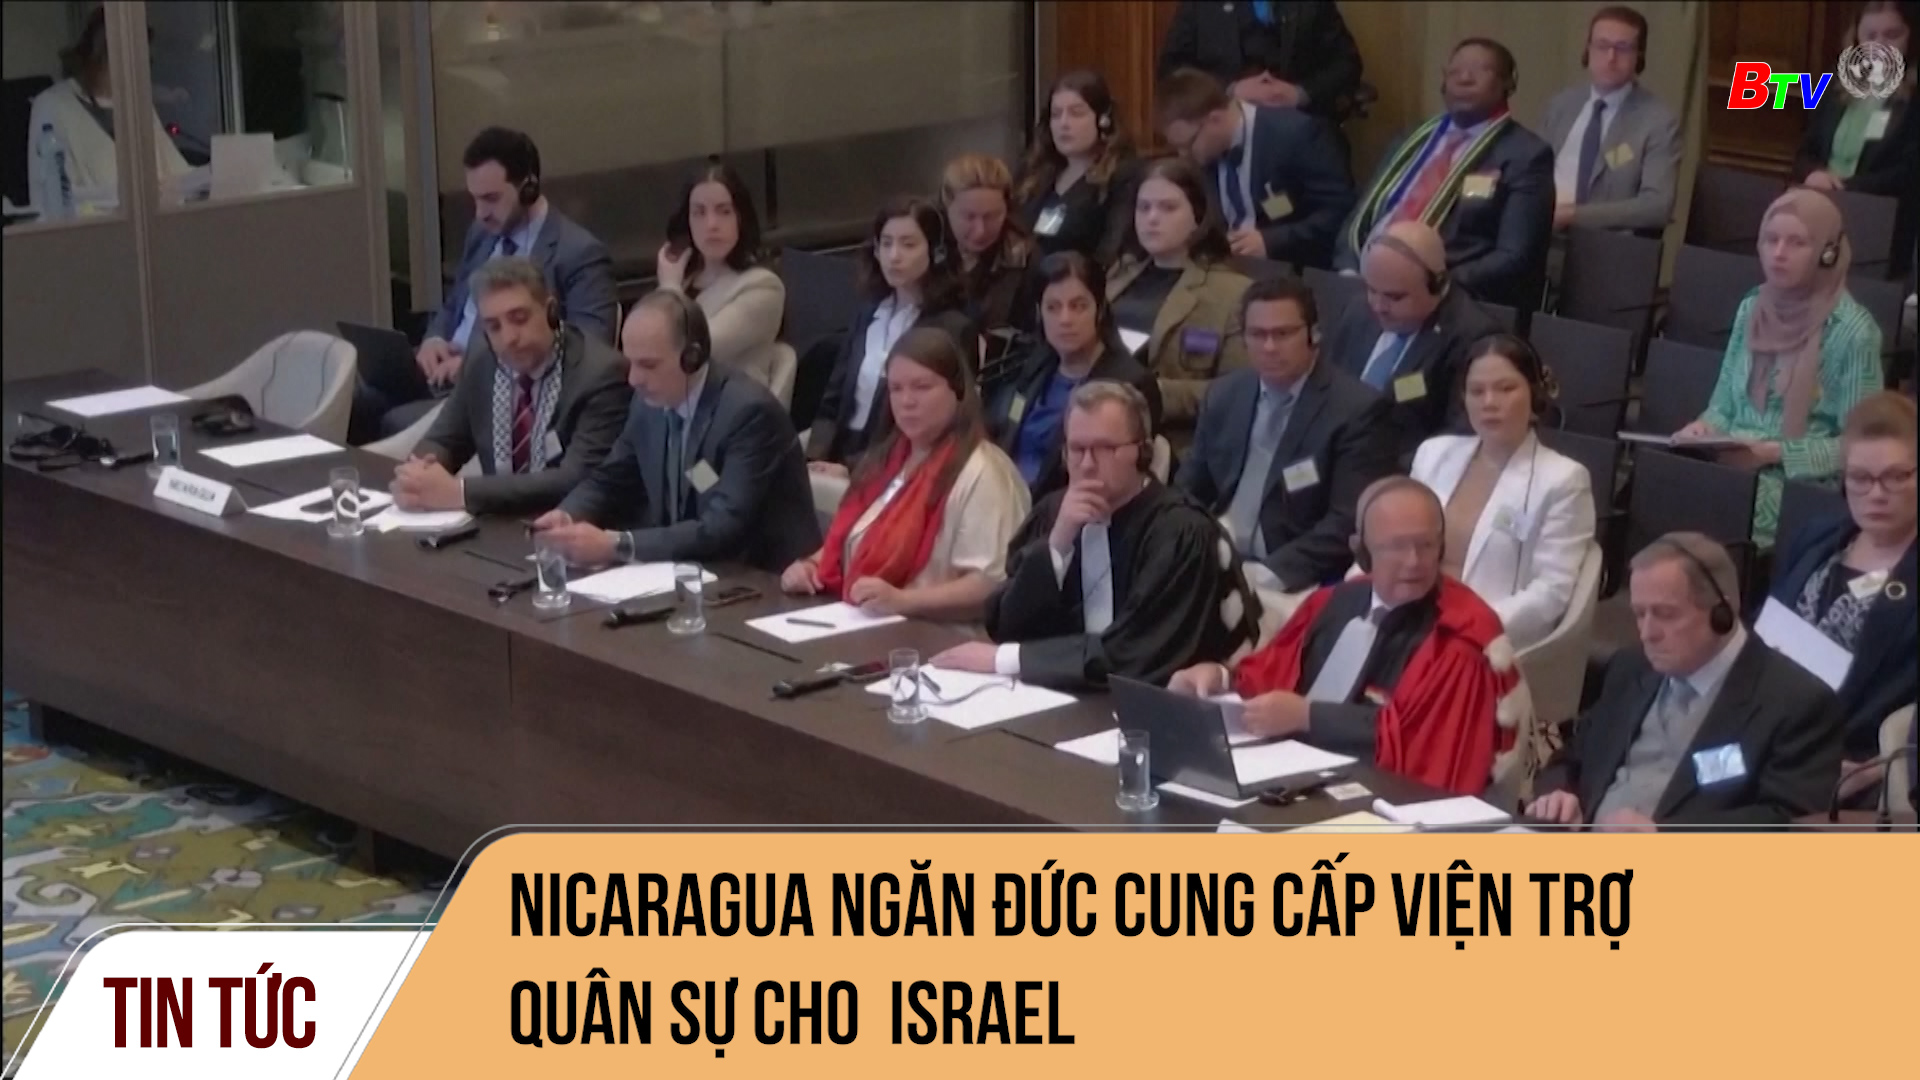 Nicaragua ngăn Đức cung cấp viện trợ quân sự choNicaragua ngăn Đức cung cấp viện trợ quân sự cho Israel